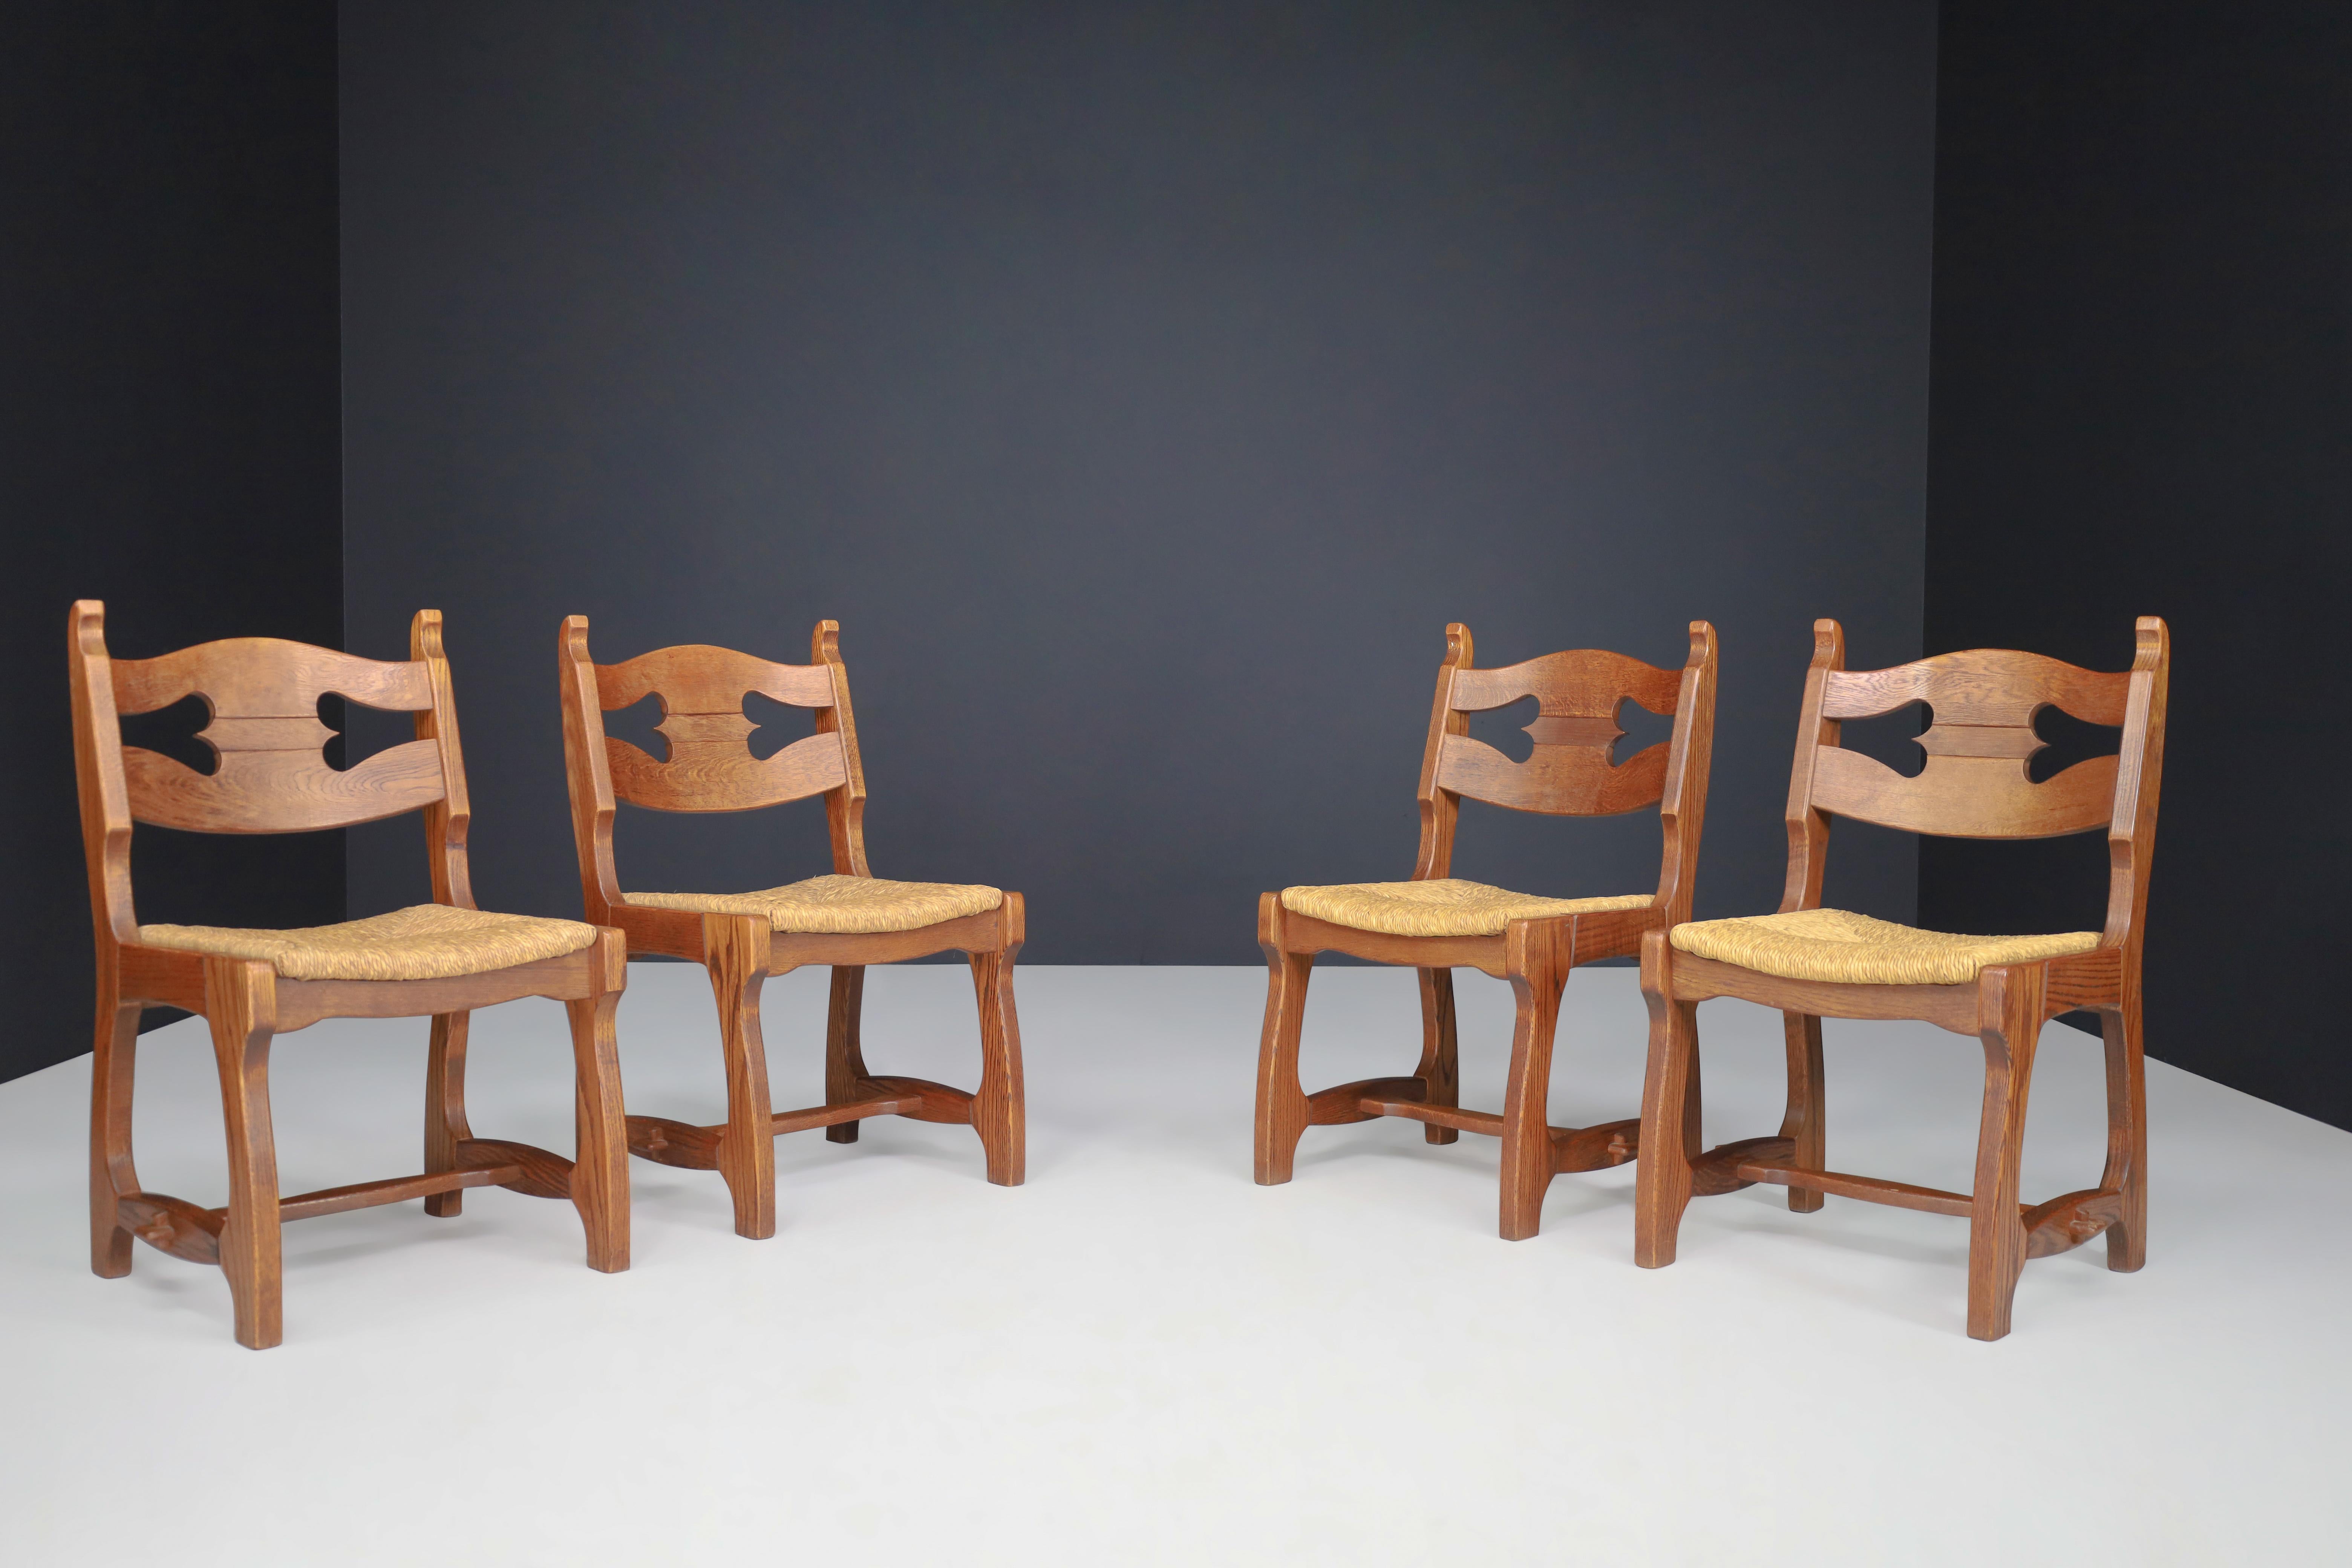 Chaises de salle à manger sculpturales en chêne et en jonc, France, années 1960

Ensemble de quatre chaises de salle à manger sculpturales en chêne et en jonc, France, années 1960. Ces chaises sont entièrement fabriquées en bois et en jonc. Ils